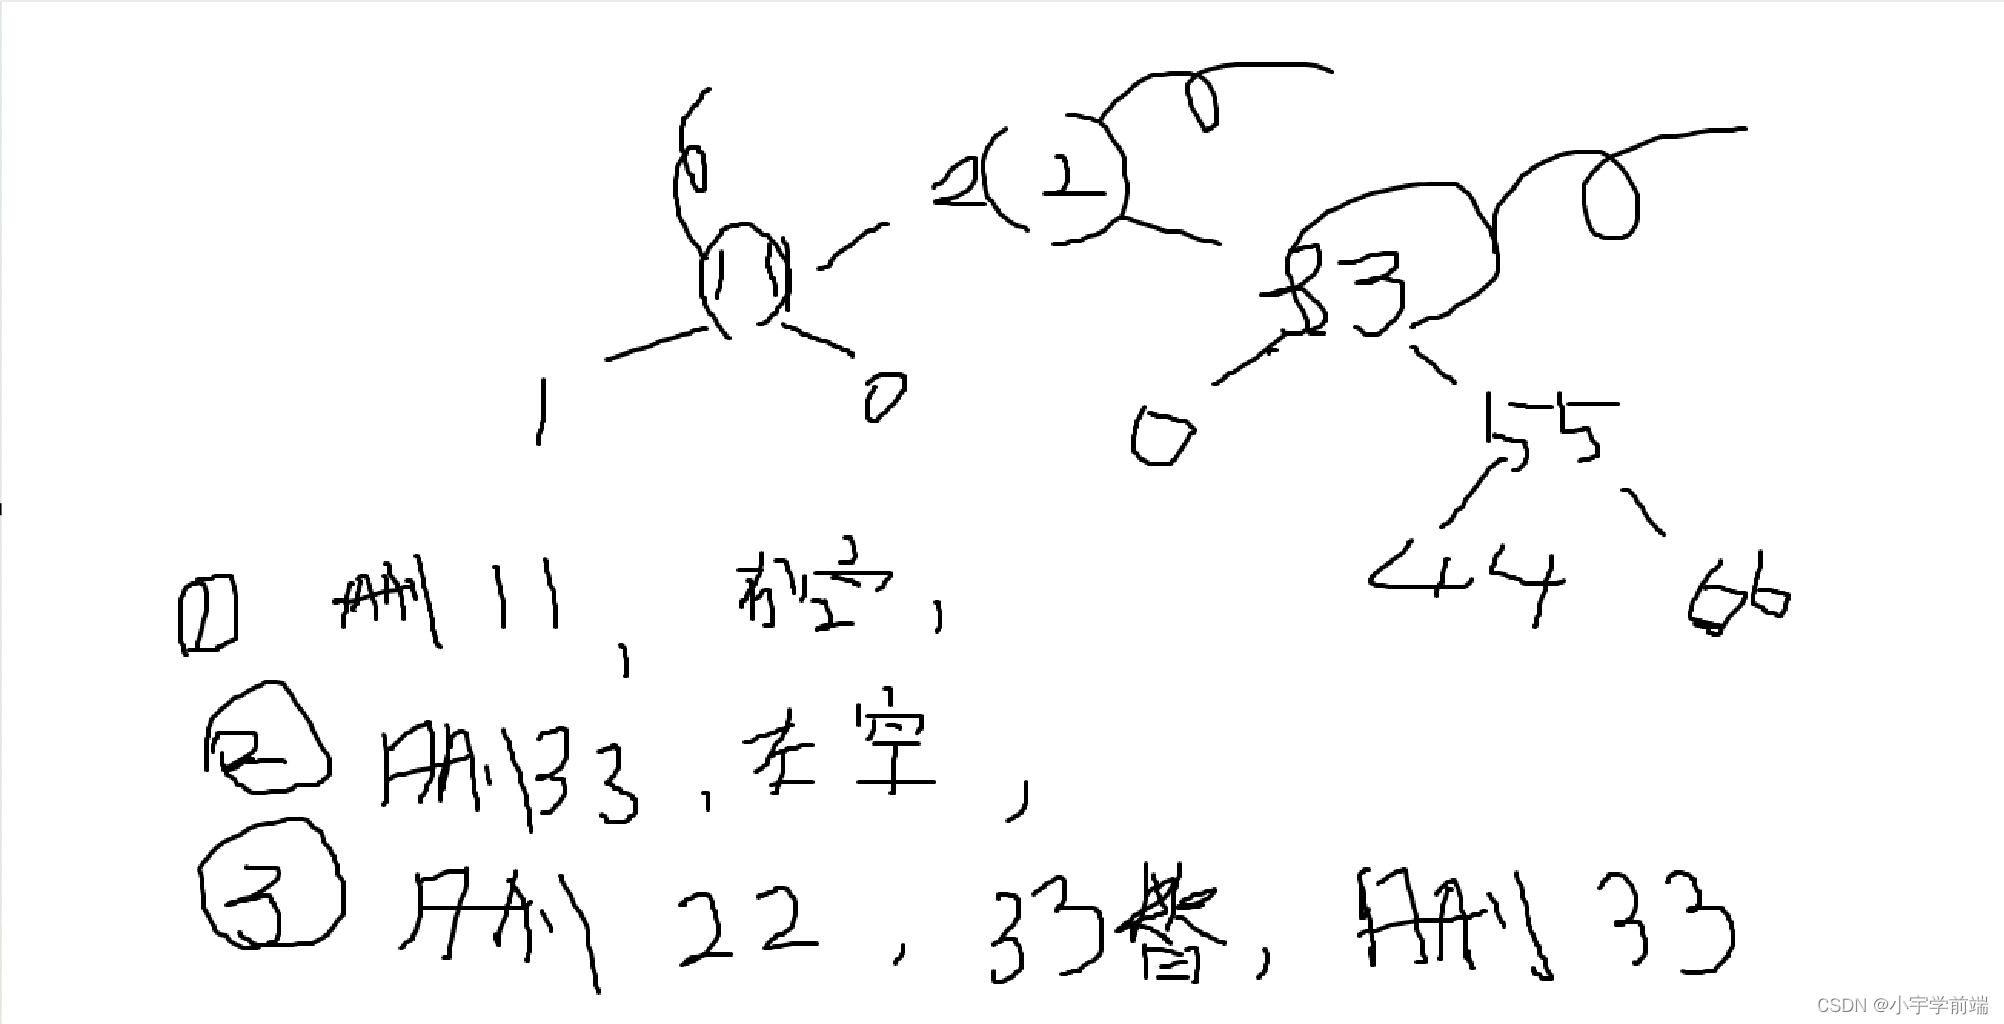 C : DS二叉排序树之删除